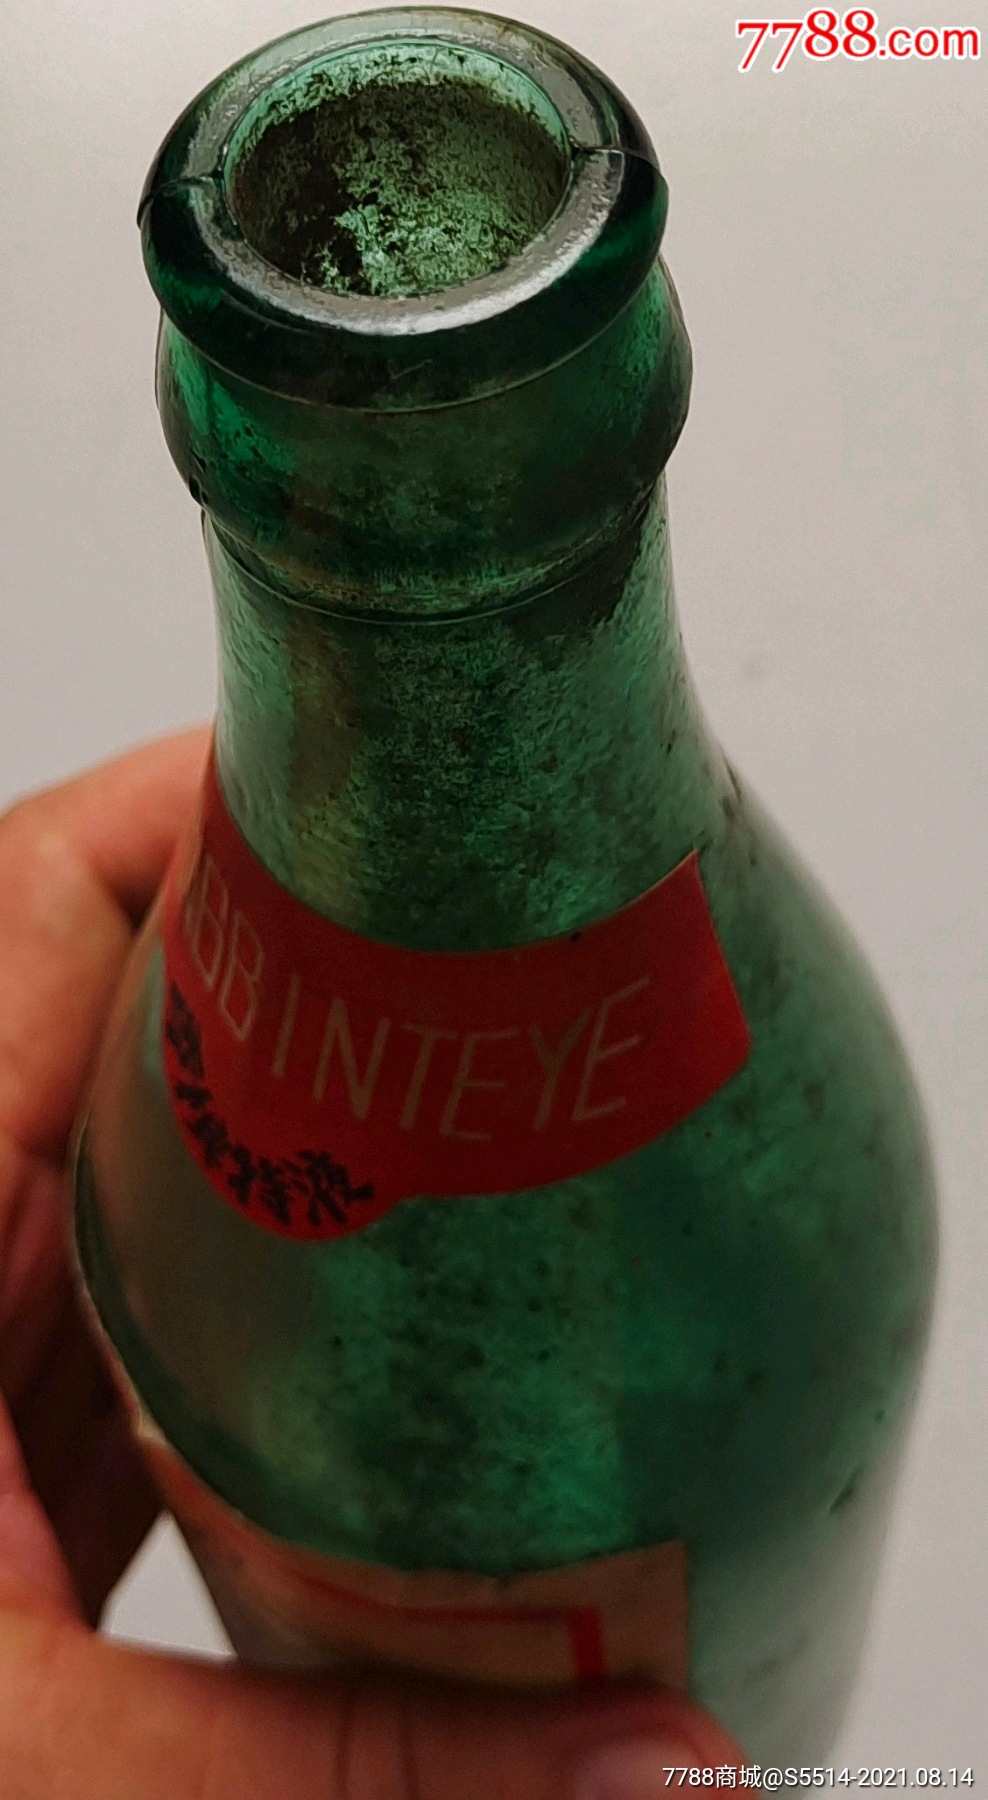 少见80年代香槟特液酒瓶(汾阳县饮料厂)!